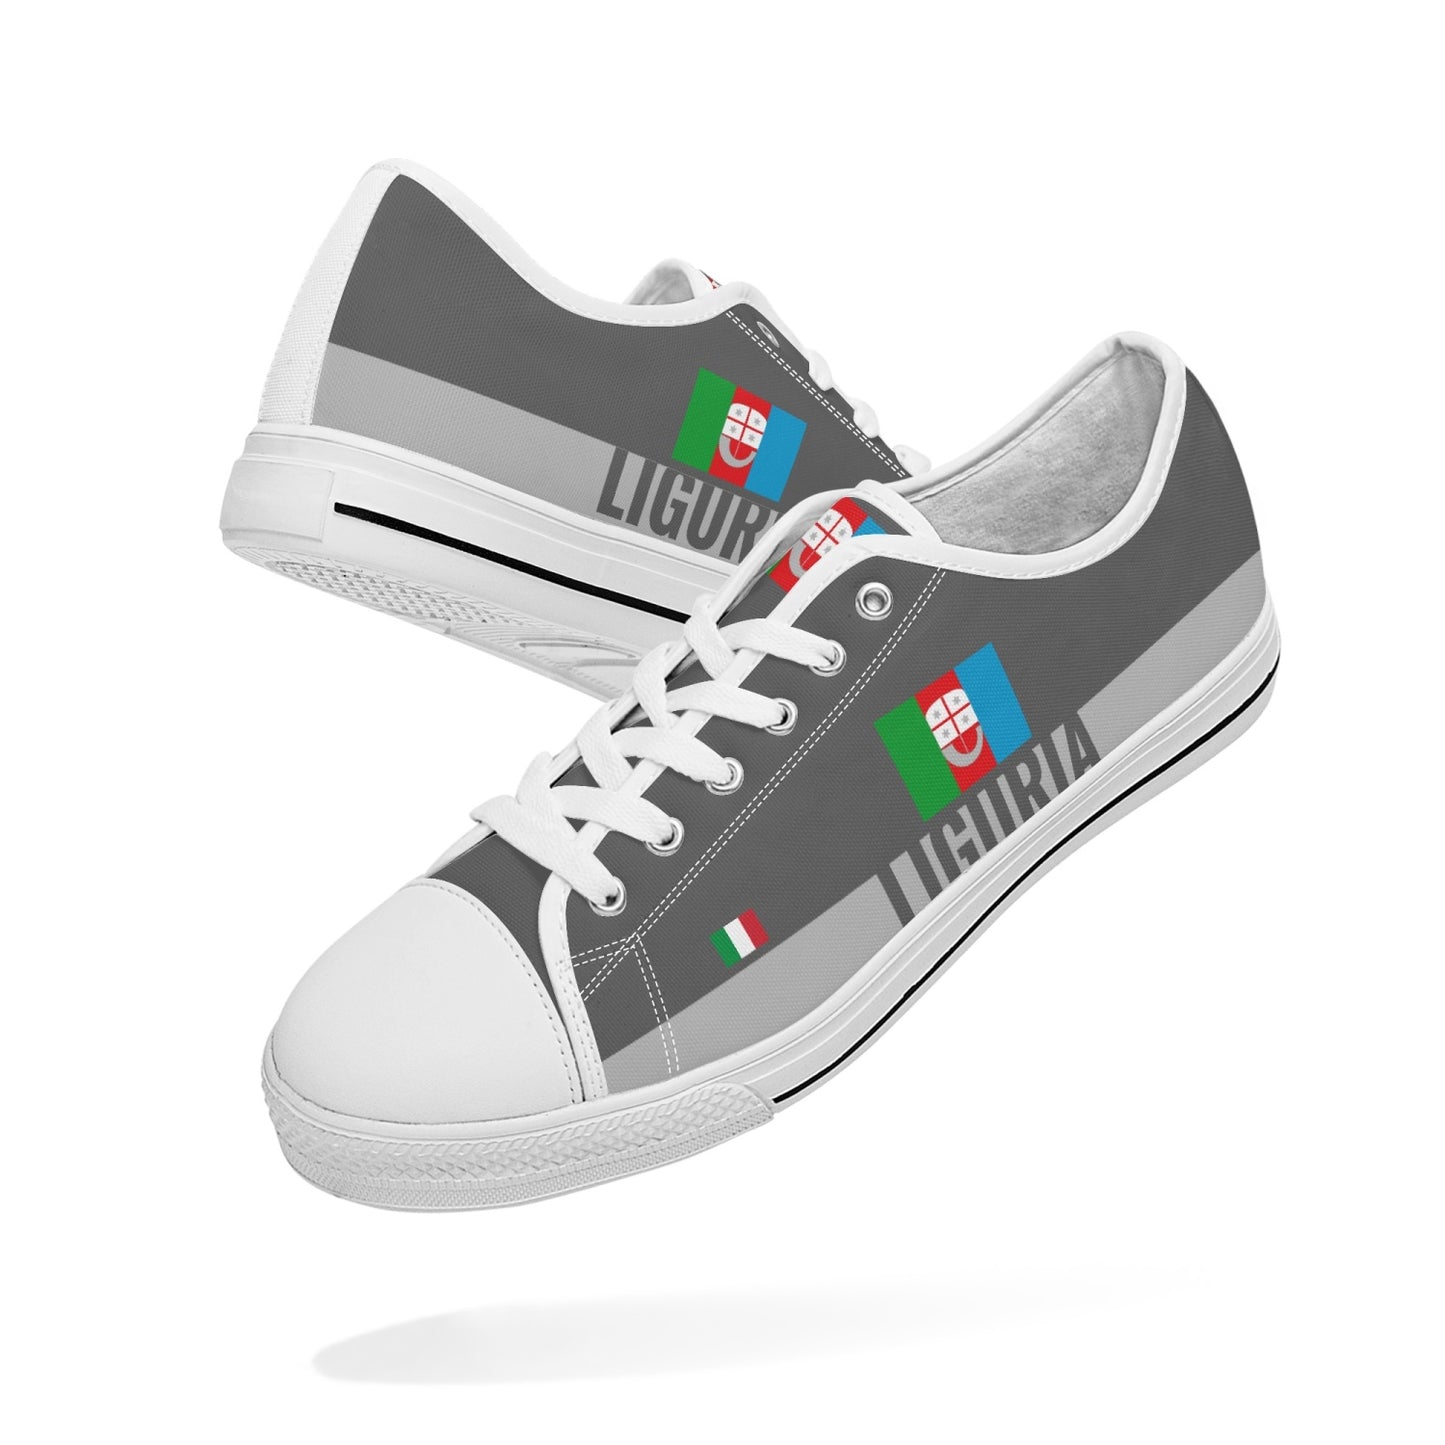 Liguria Shoes Low-top V2